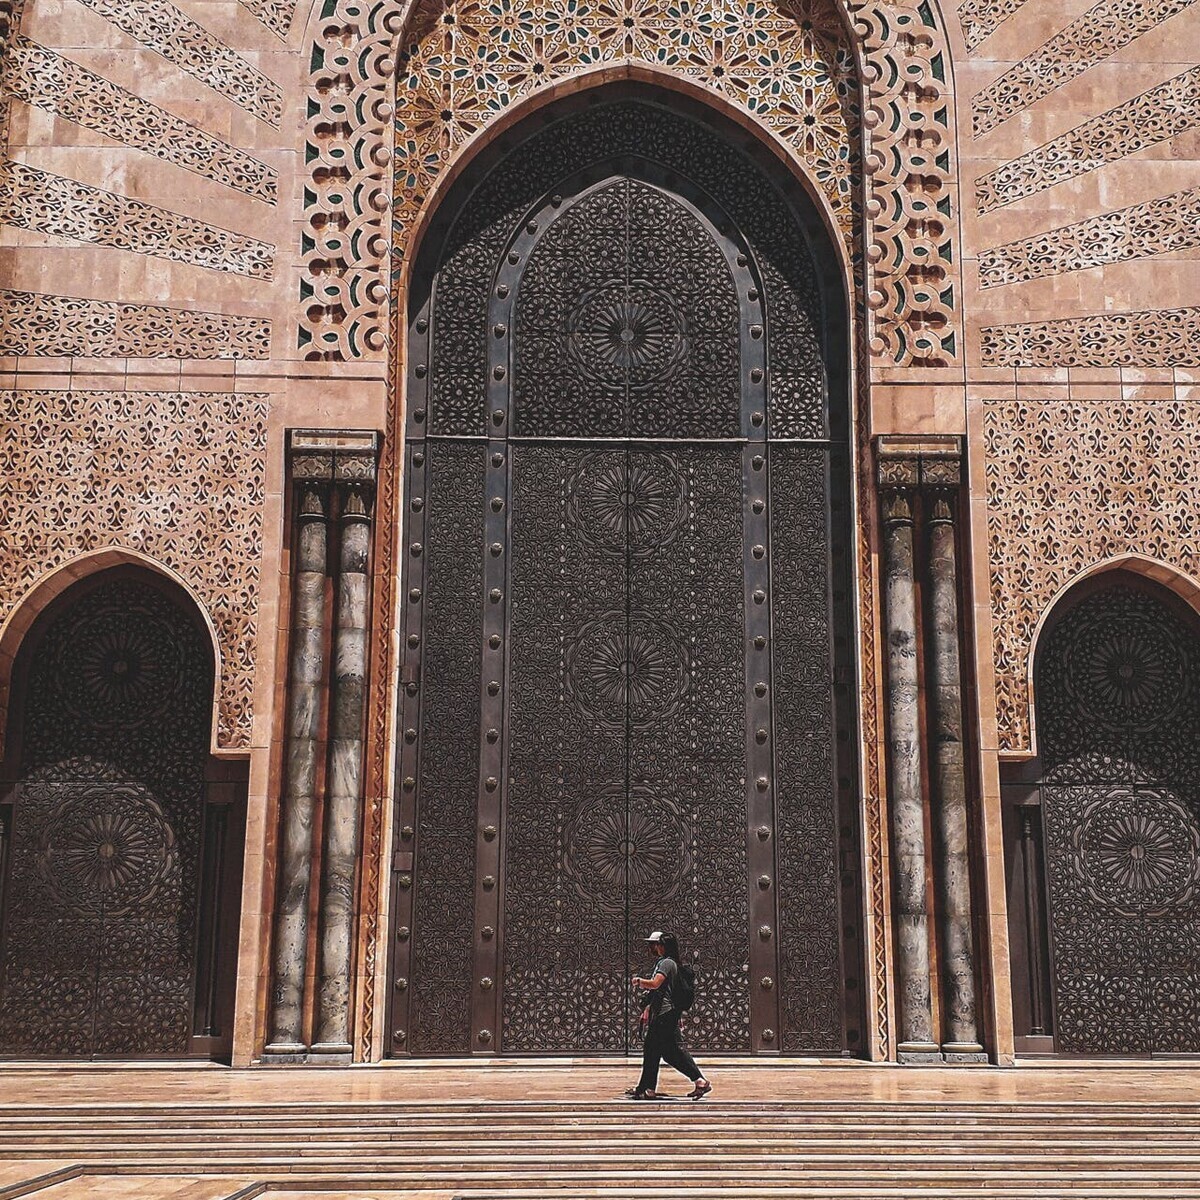 Vizesiz 5 Gün Tüm Turlar Dahil Yarım Pansiyon Casablanca - Marrakech Turu (Bayramlarda Geçerli)